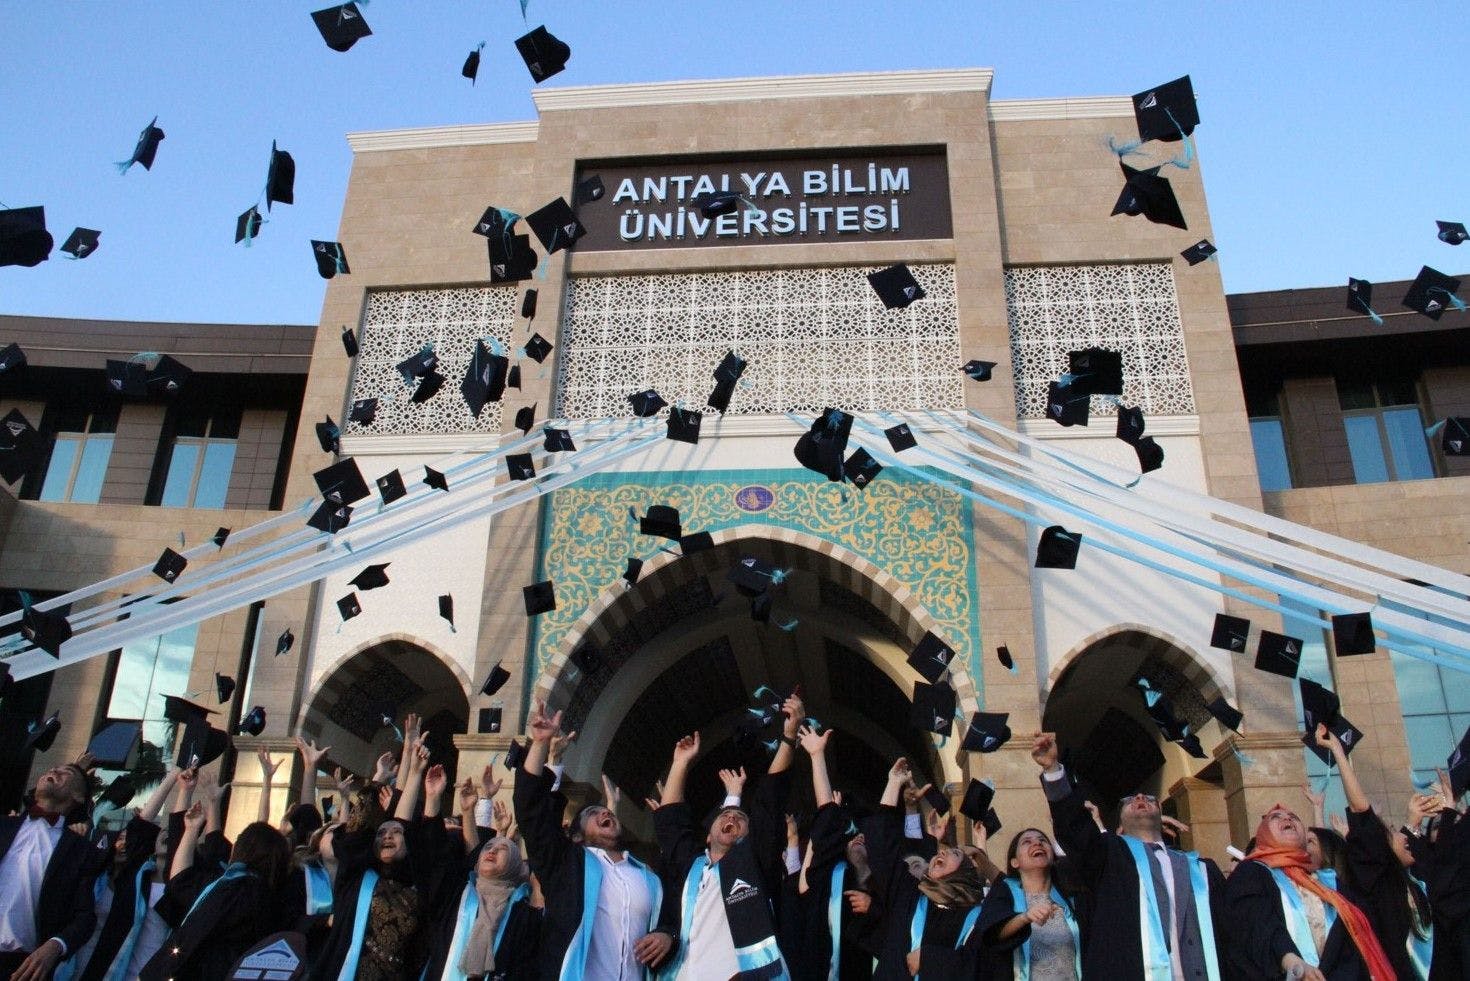 Antalya Bilim University جامعة انطاليا بيليم